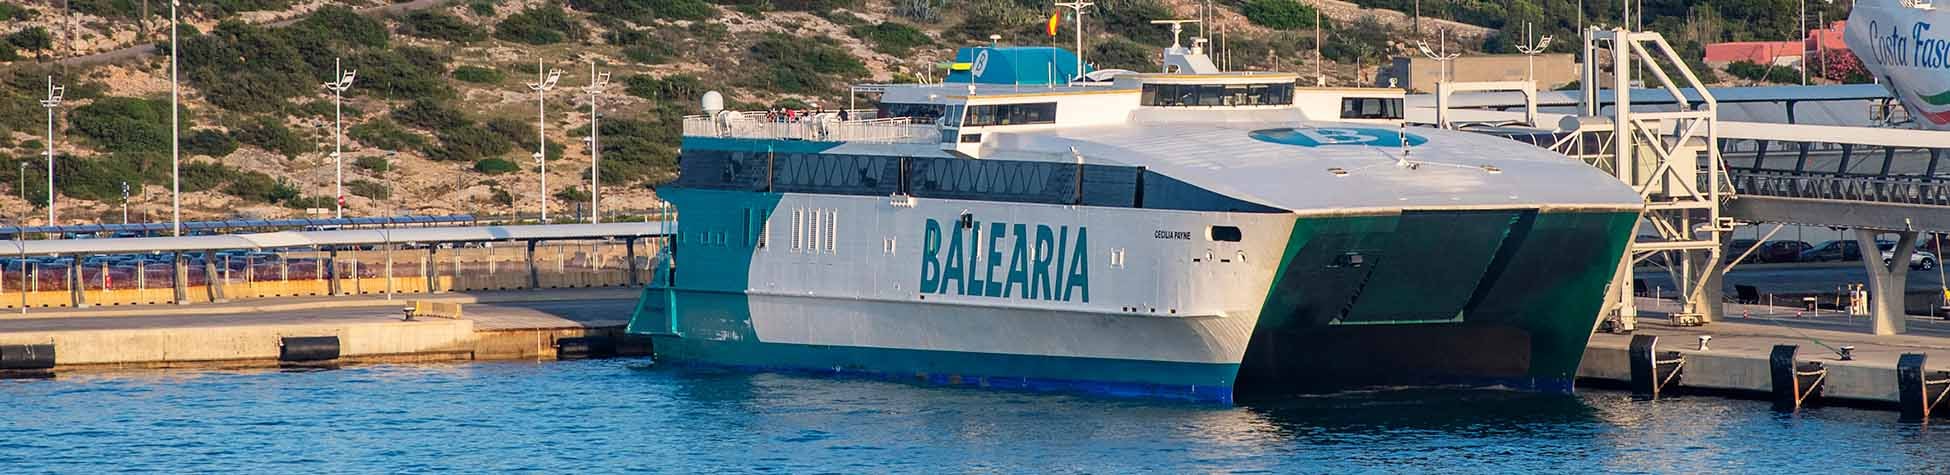 Imatge recurs del port de destinació Mallorca (Alcúdia) per a la ruta en ferry Barcelona - Mallorca (Alcúdia)